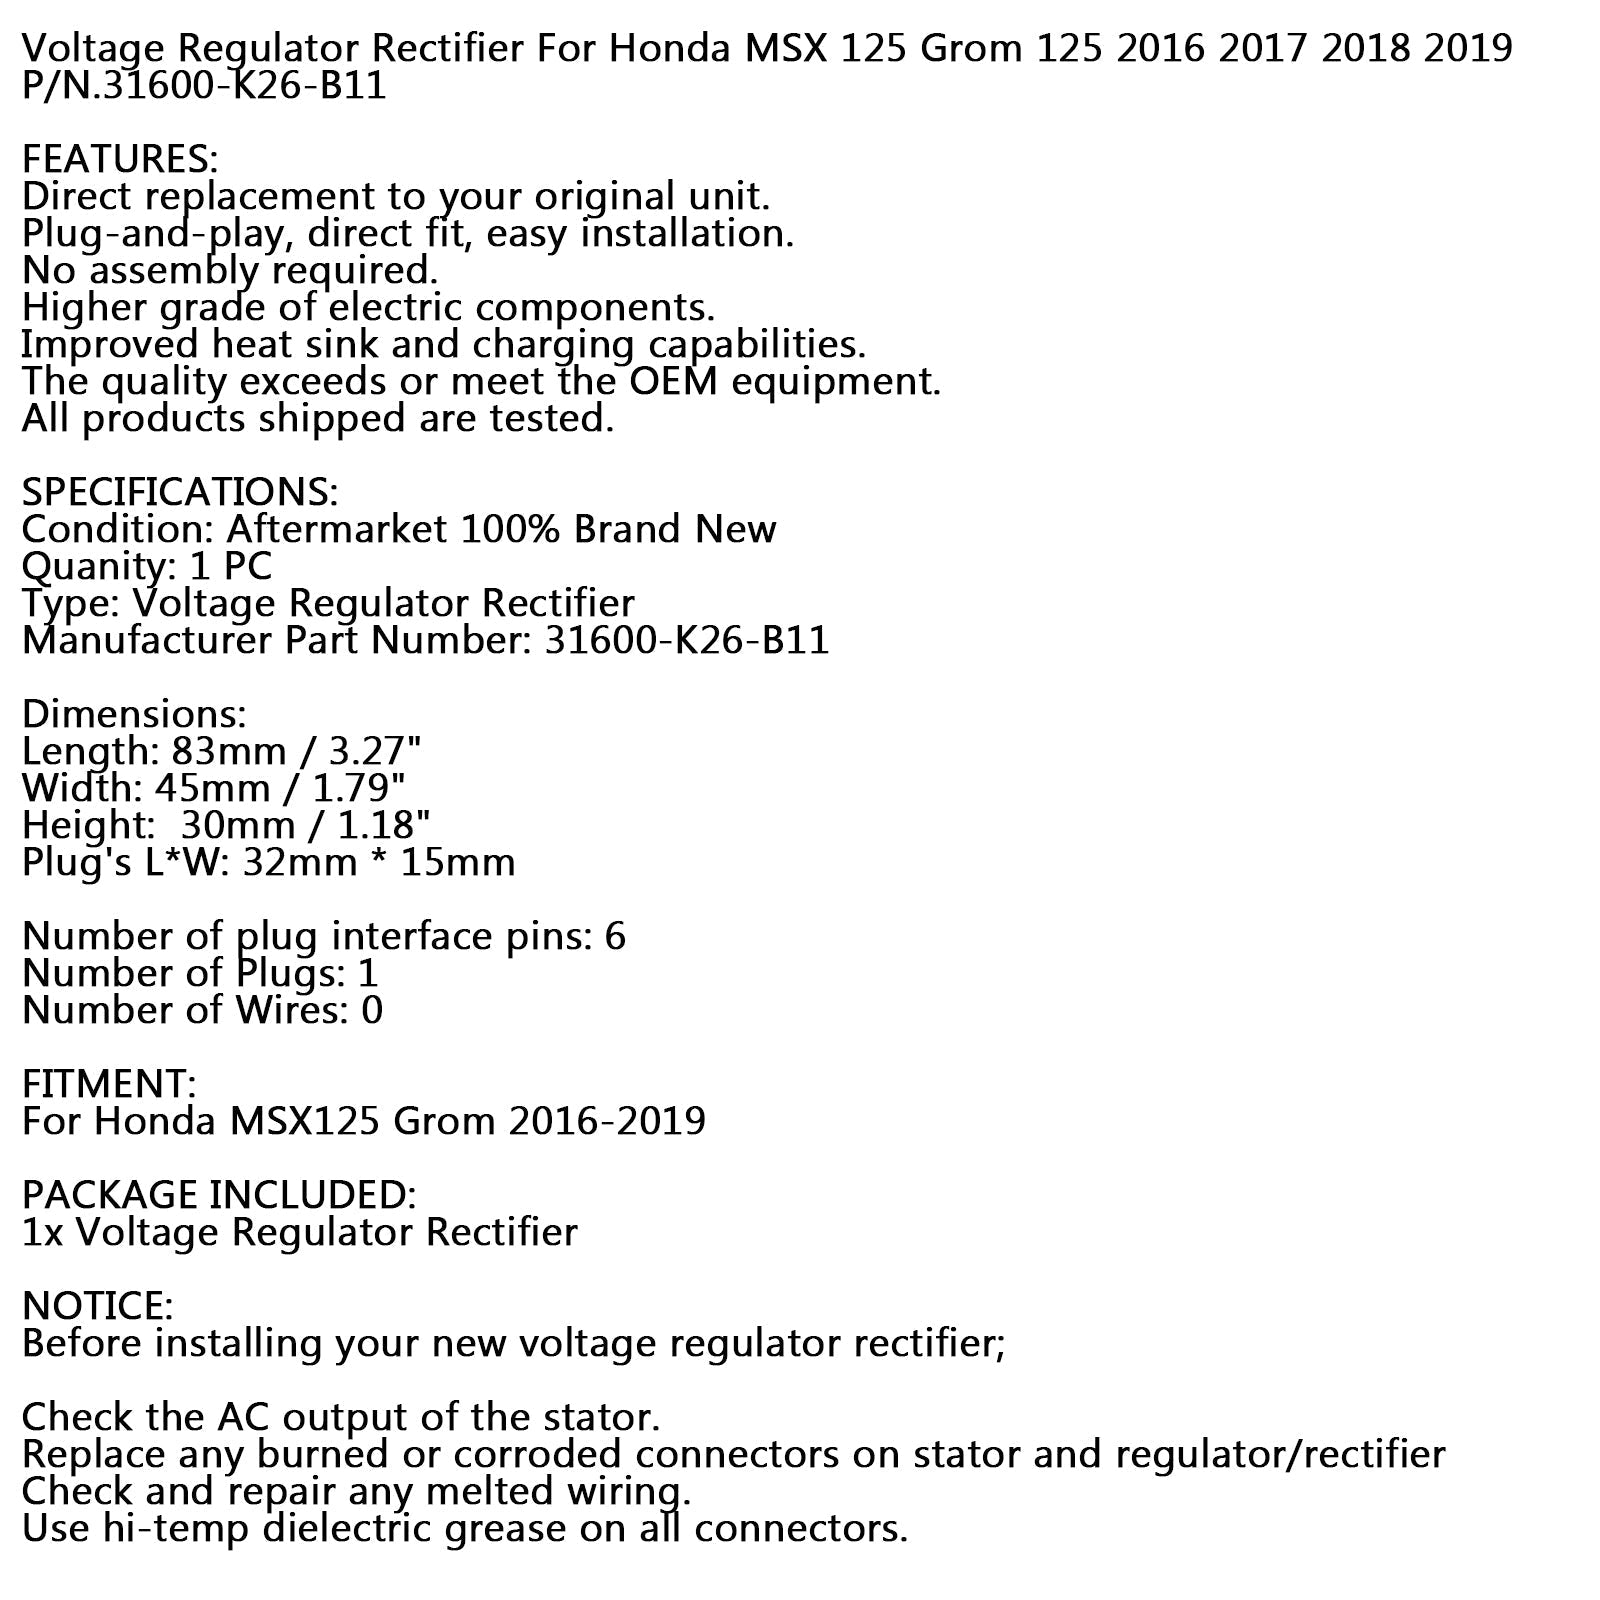 Regulador rectificador de voltaje para Honda MSX125 Grom 125 2016-2019 genérico 31600-K26-B11